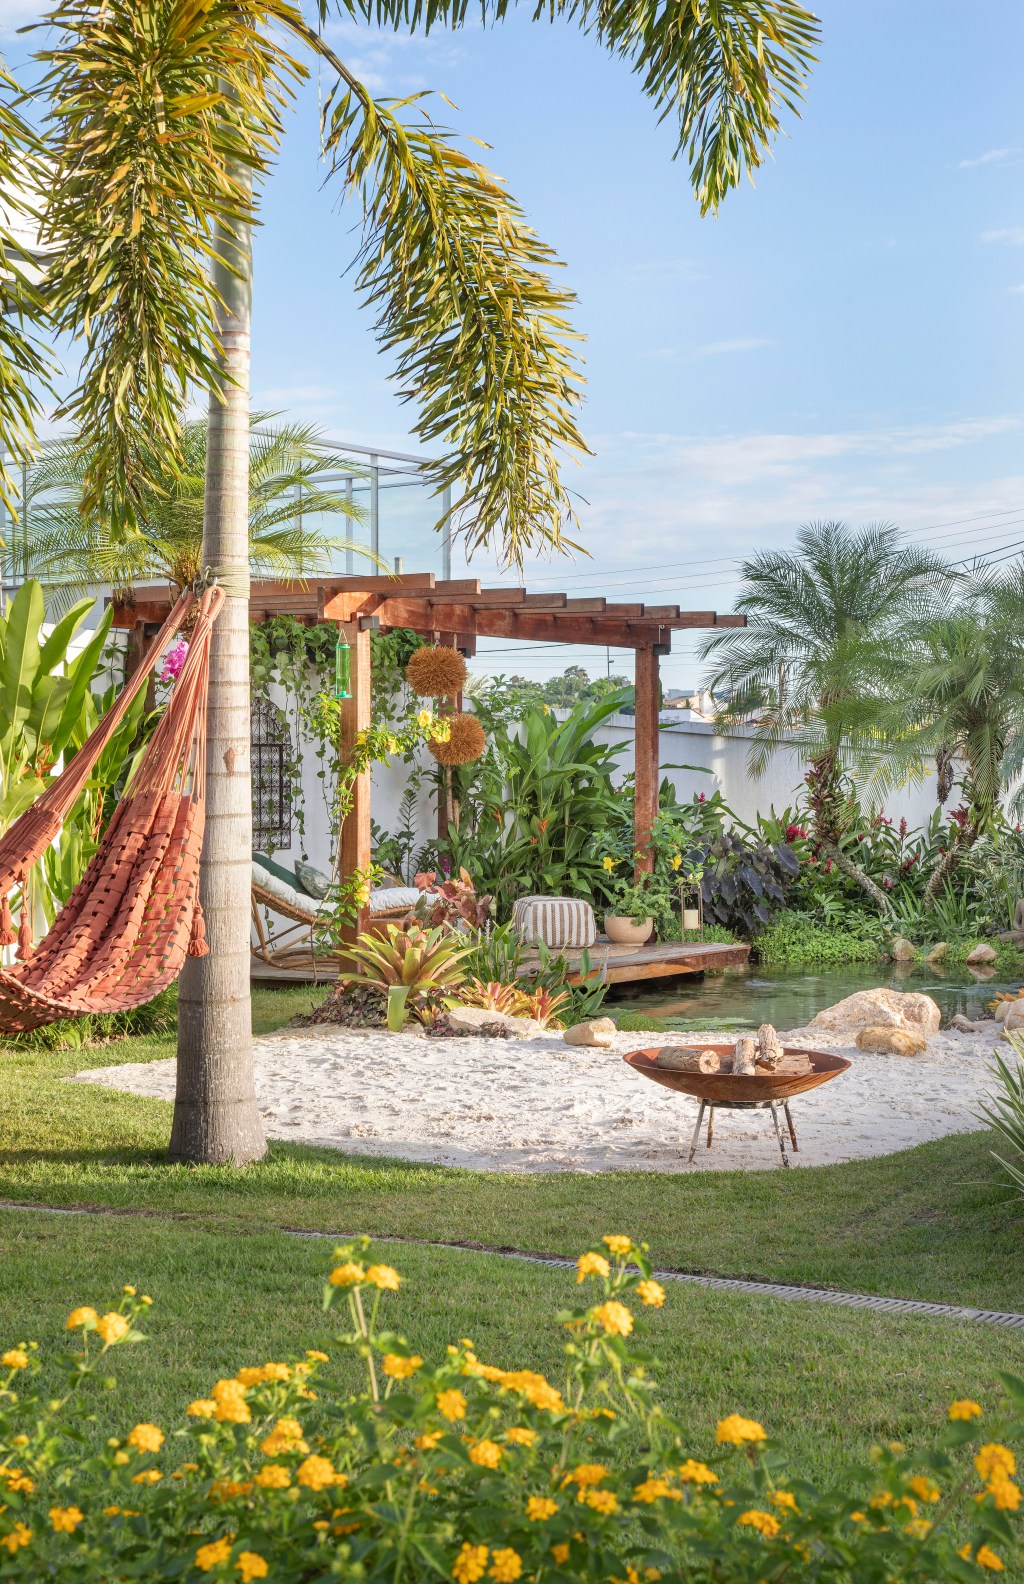 Jardim de 900 m² tem lago com peixes, praia de areia branca e pomar. Projeto de Ana Veras e Bernardo Vieira. Na foto, gazebo com pergolado e prainha com areia.